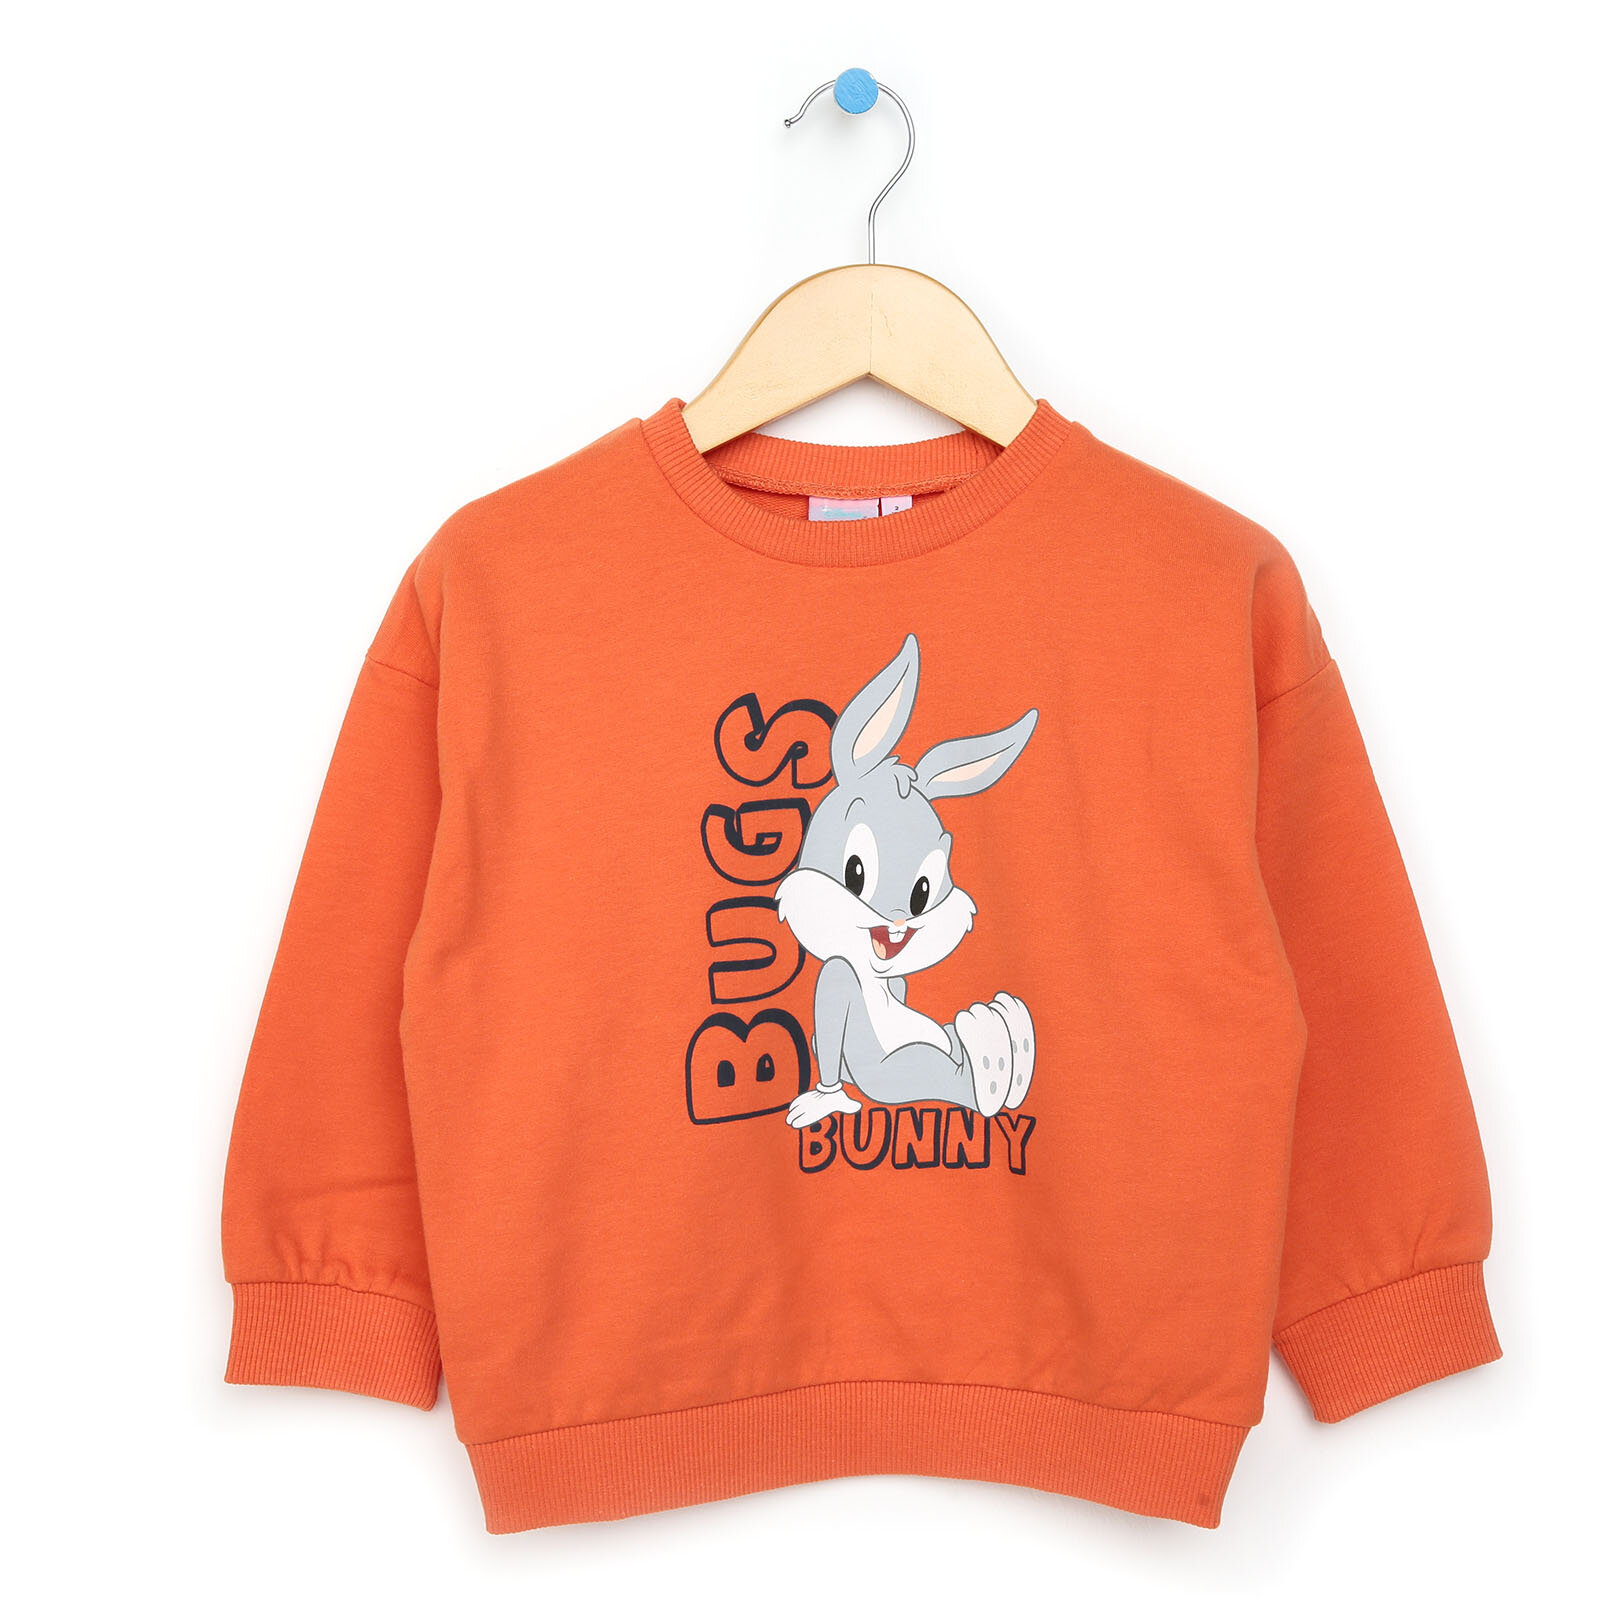 Looney Tunes Baby Bunny Erkek Bebek Lisanslı Sweatshirt